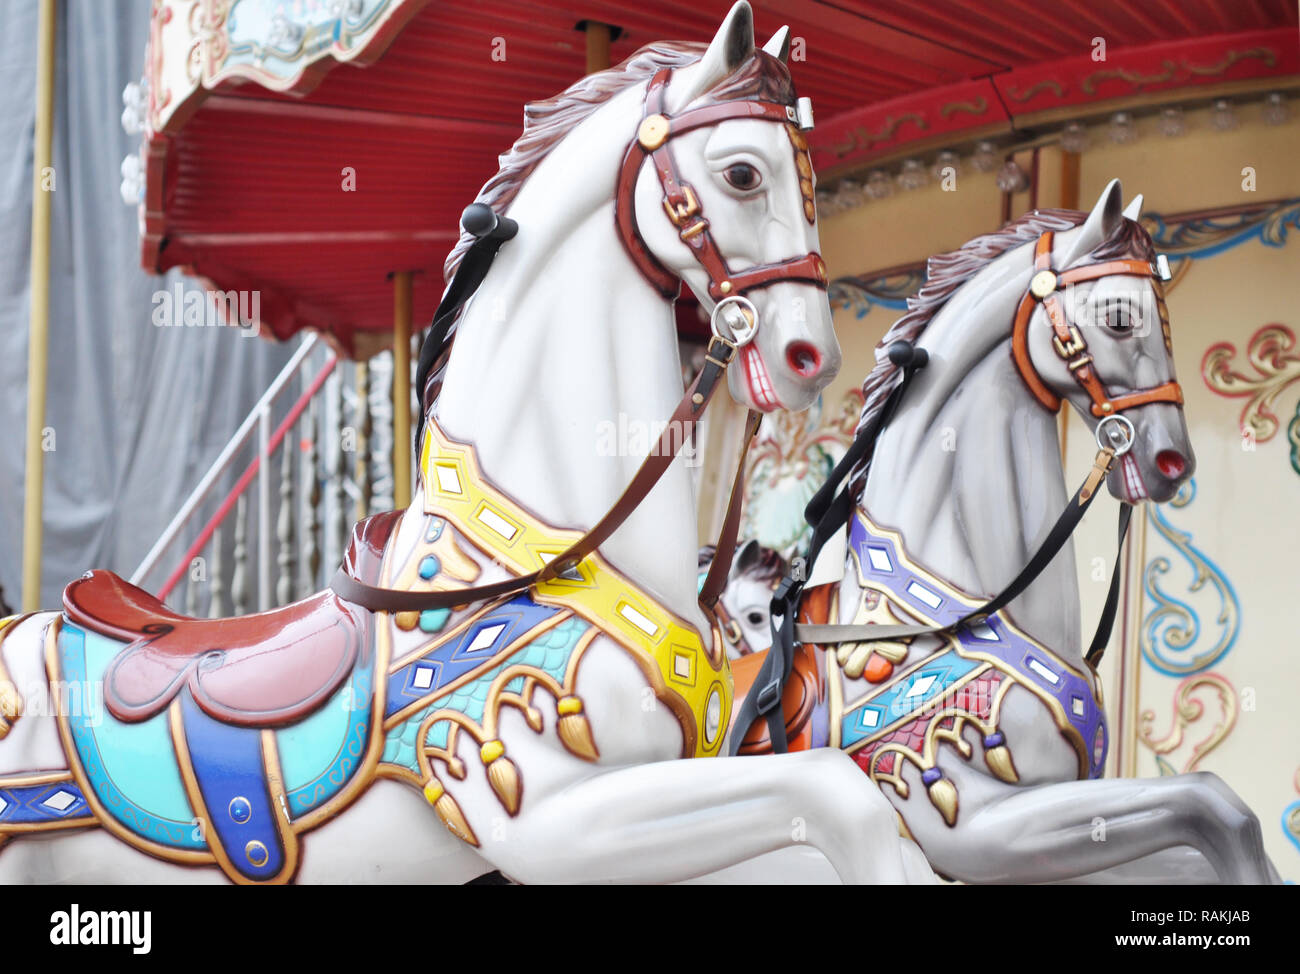 Schöne weisse Pferde Weihnachten Karussell in einem Ferienpark. Zwei Pferde auf einem traditionellen Jahrmarkt vintage Paris Karussell. Merry-go-round mit Pferden Stockfoto